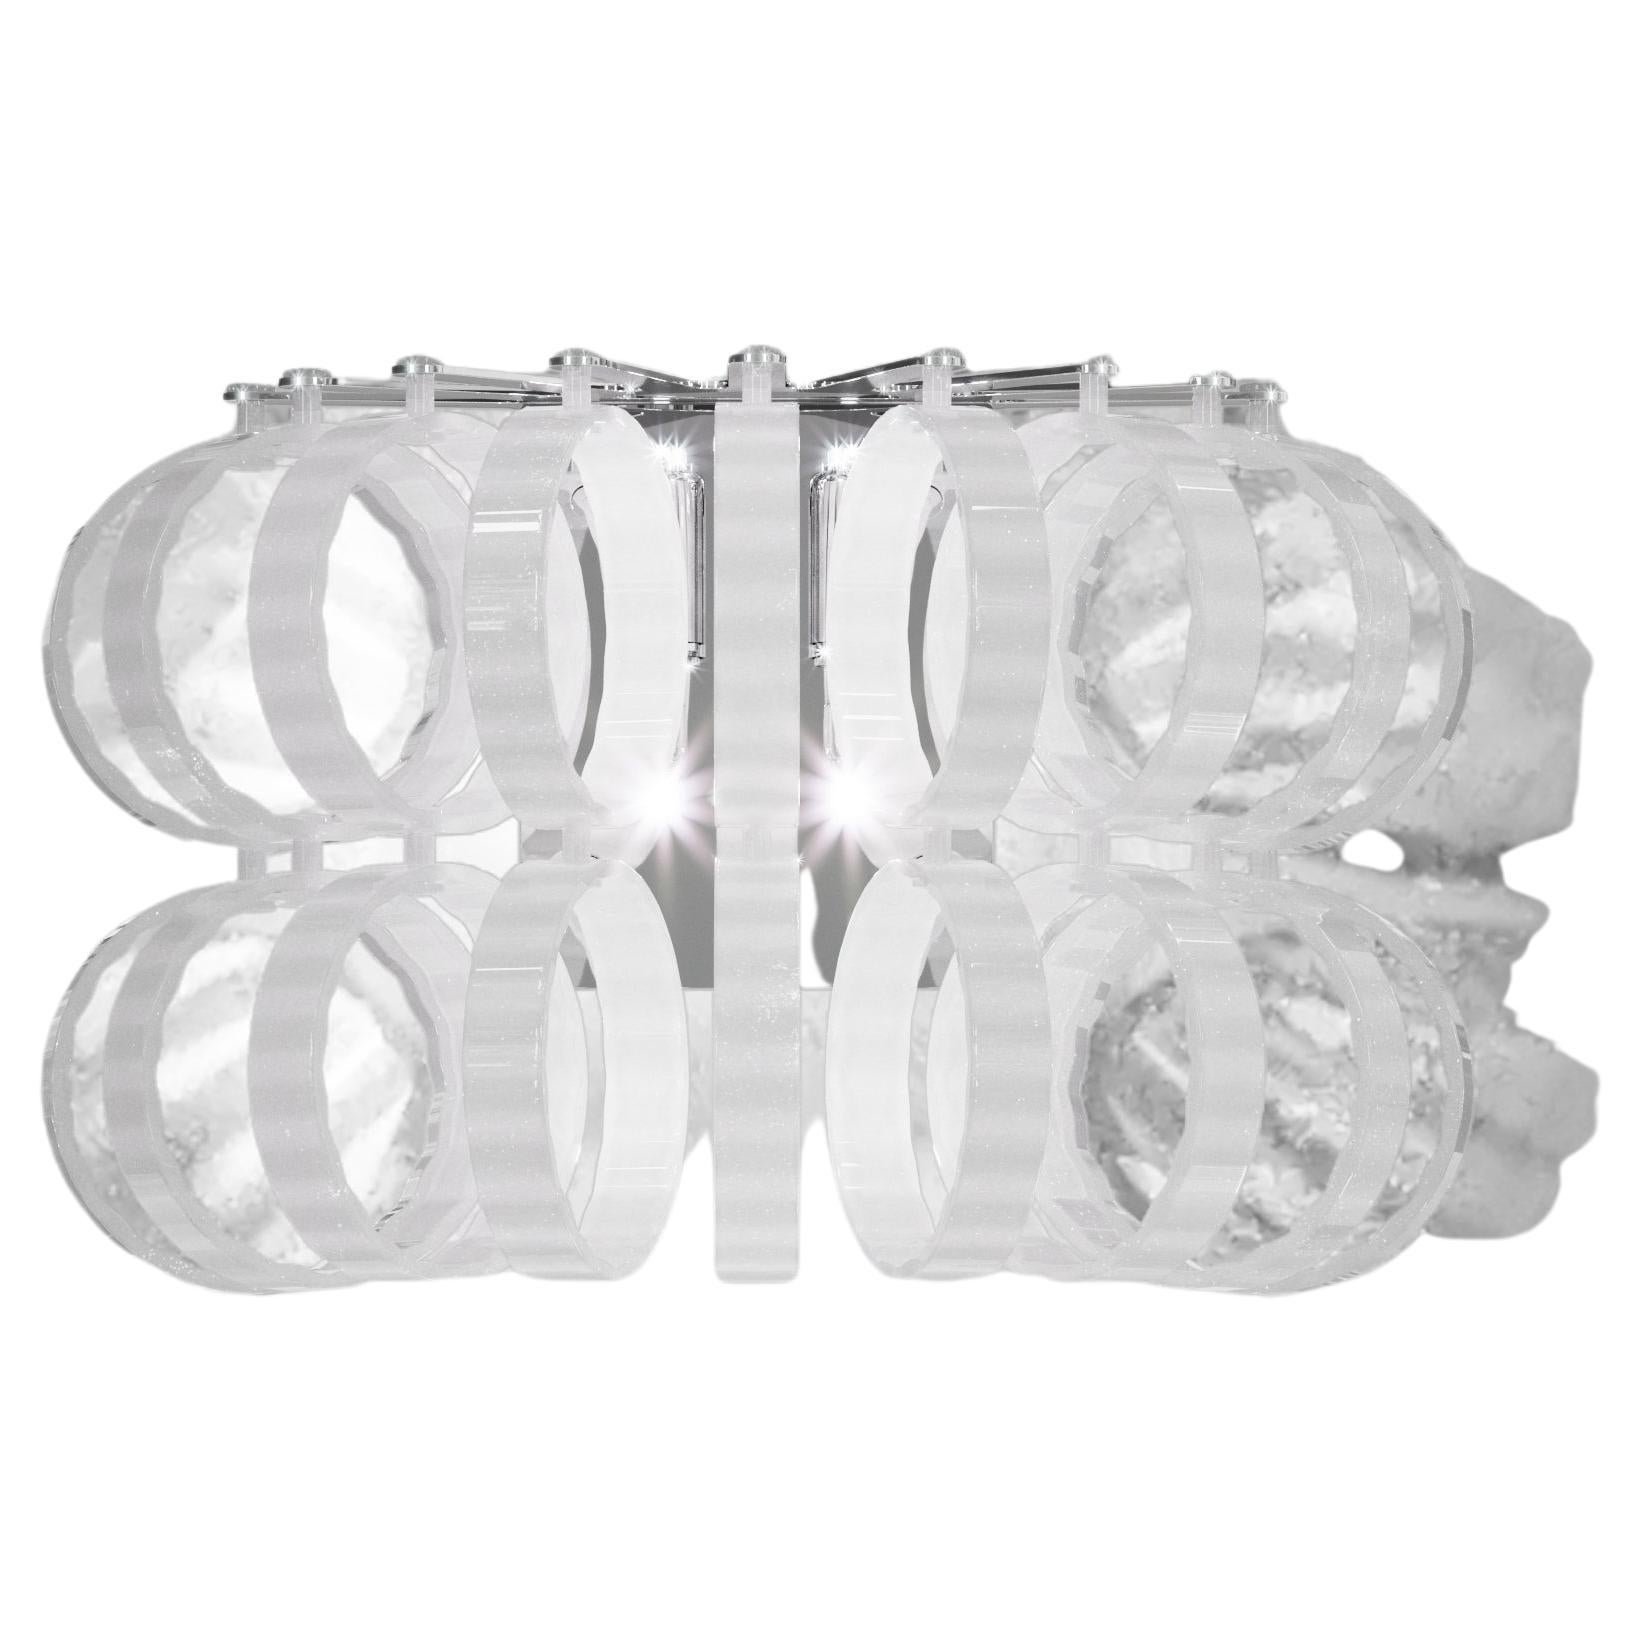 Vistosi Ecos-Wandleuchter aus weiß gestreiftem Glas mit glänzendem Chromrahmen